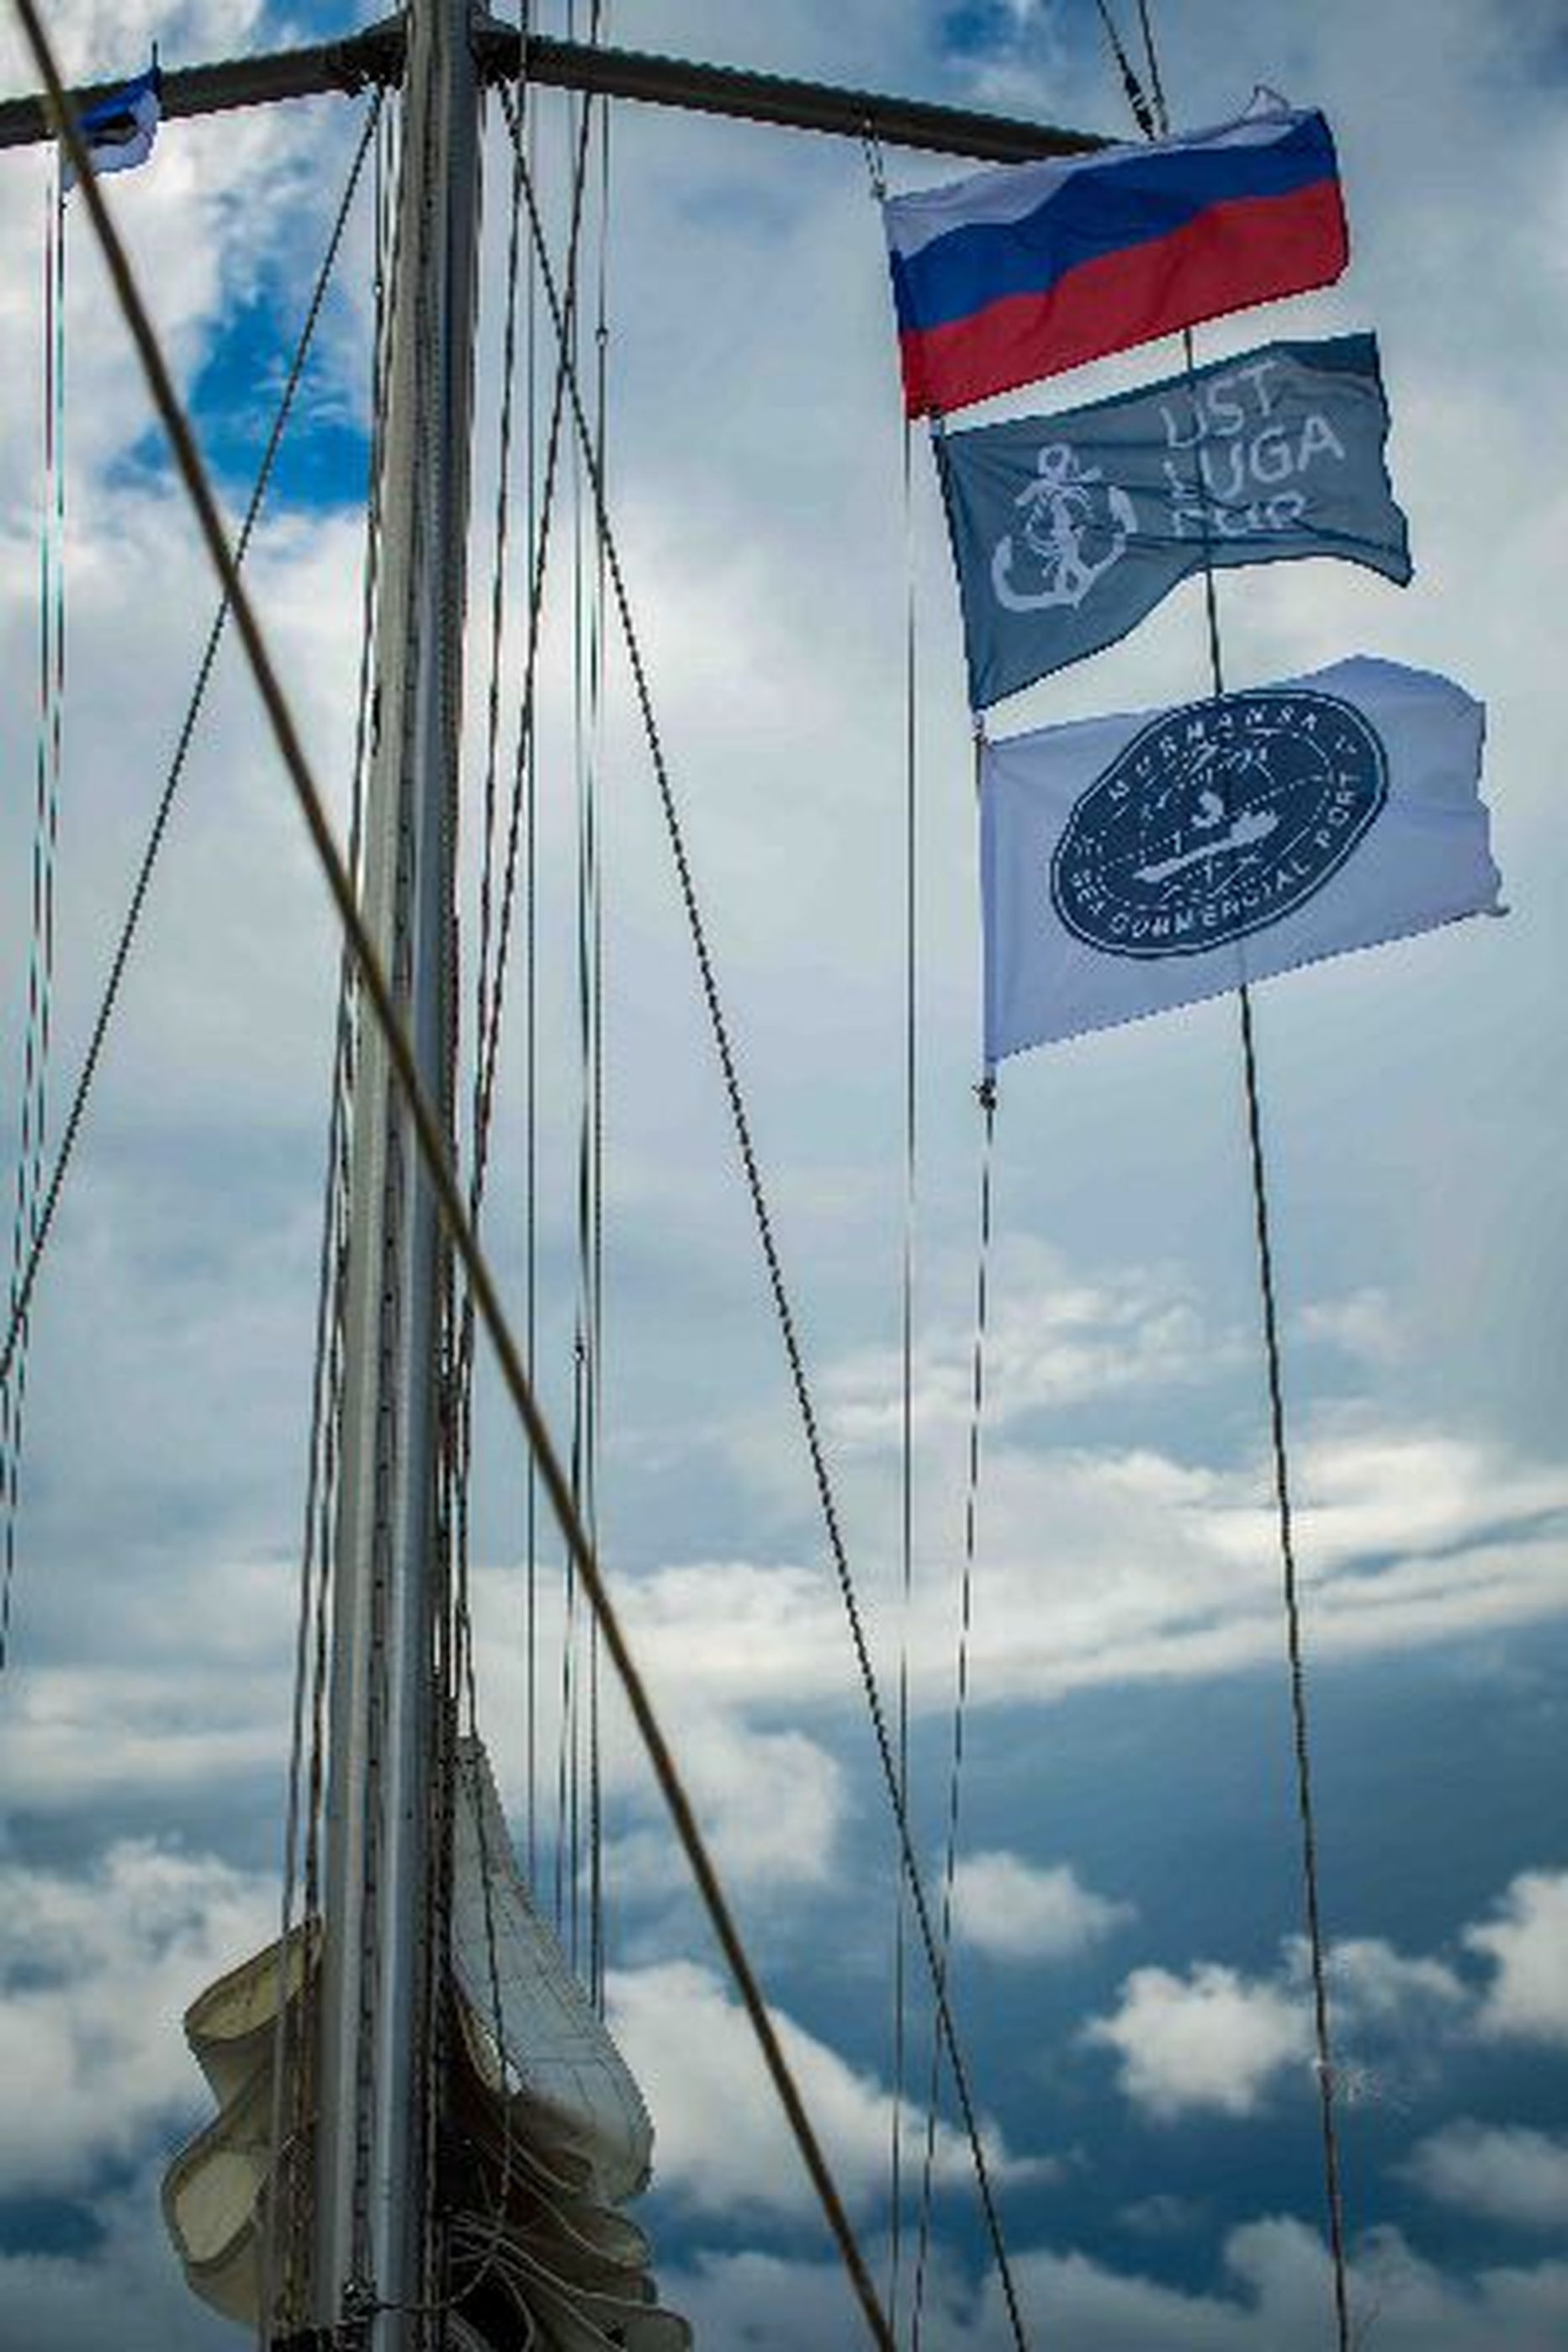 Флаги на яхте, участвовавшей в прошлогодней регате "Кубок Усть-Луги". Таллиннский залив.